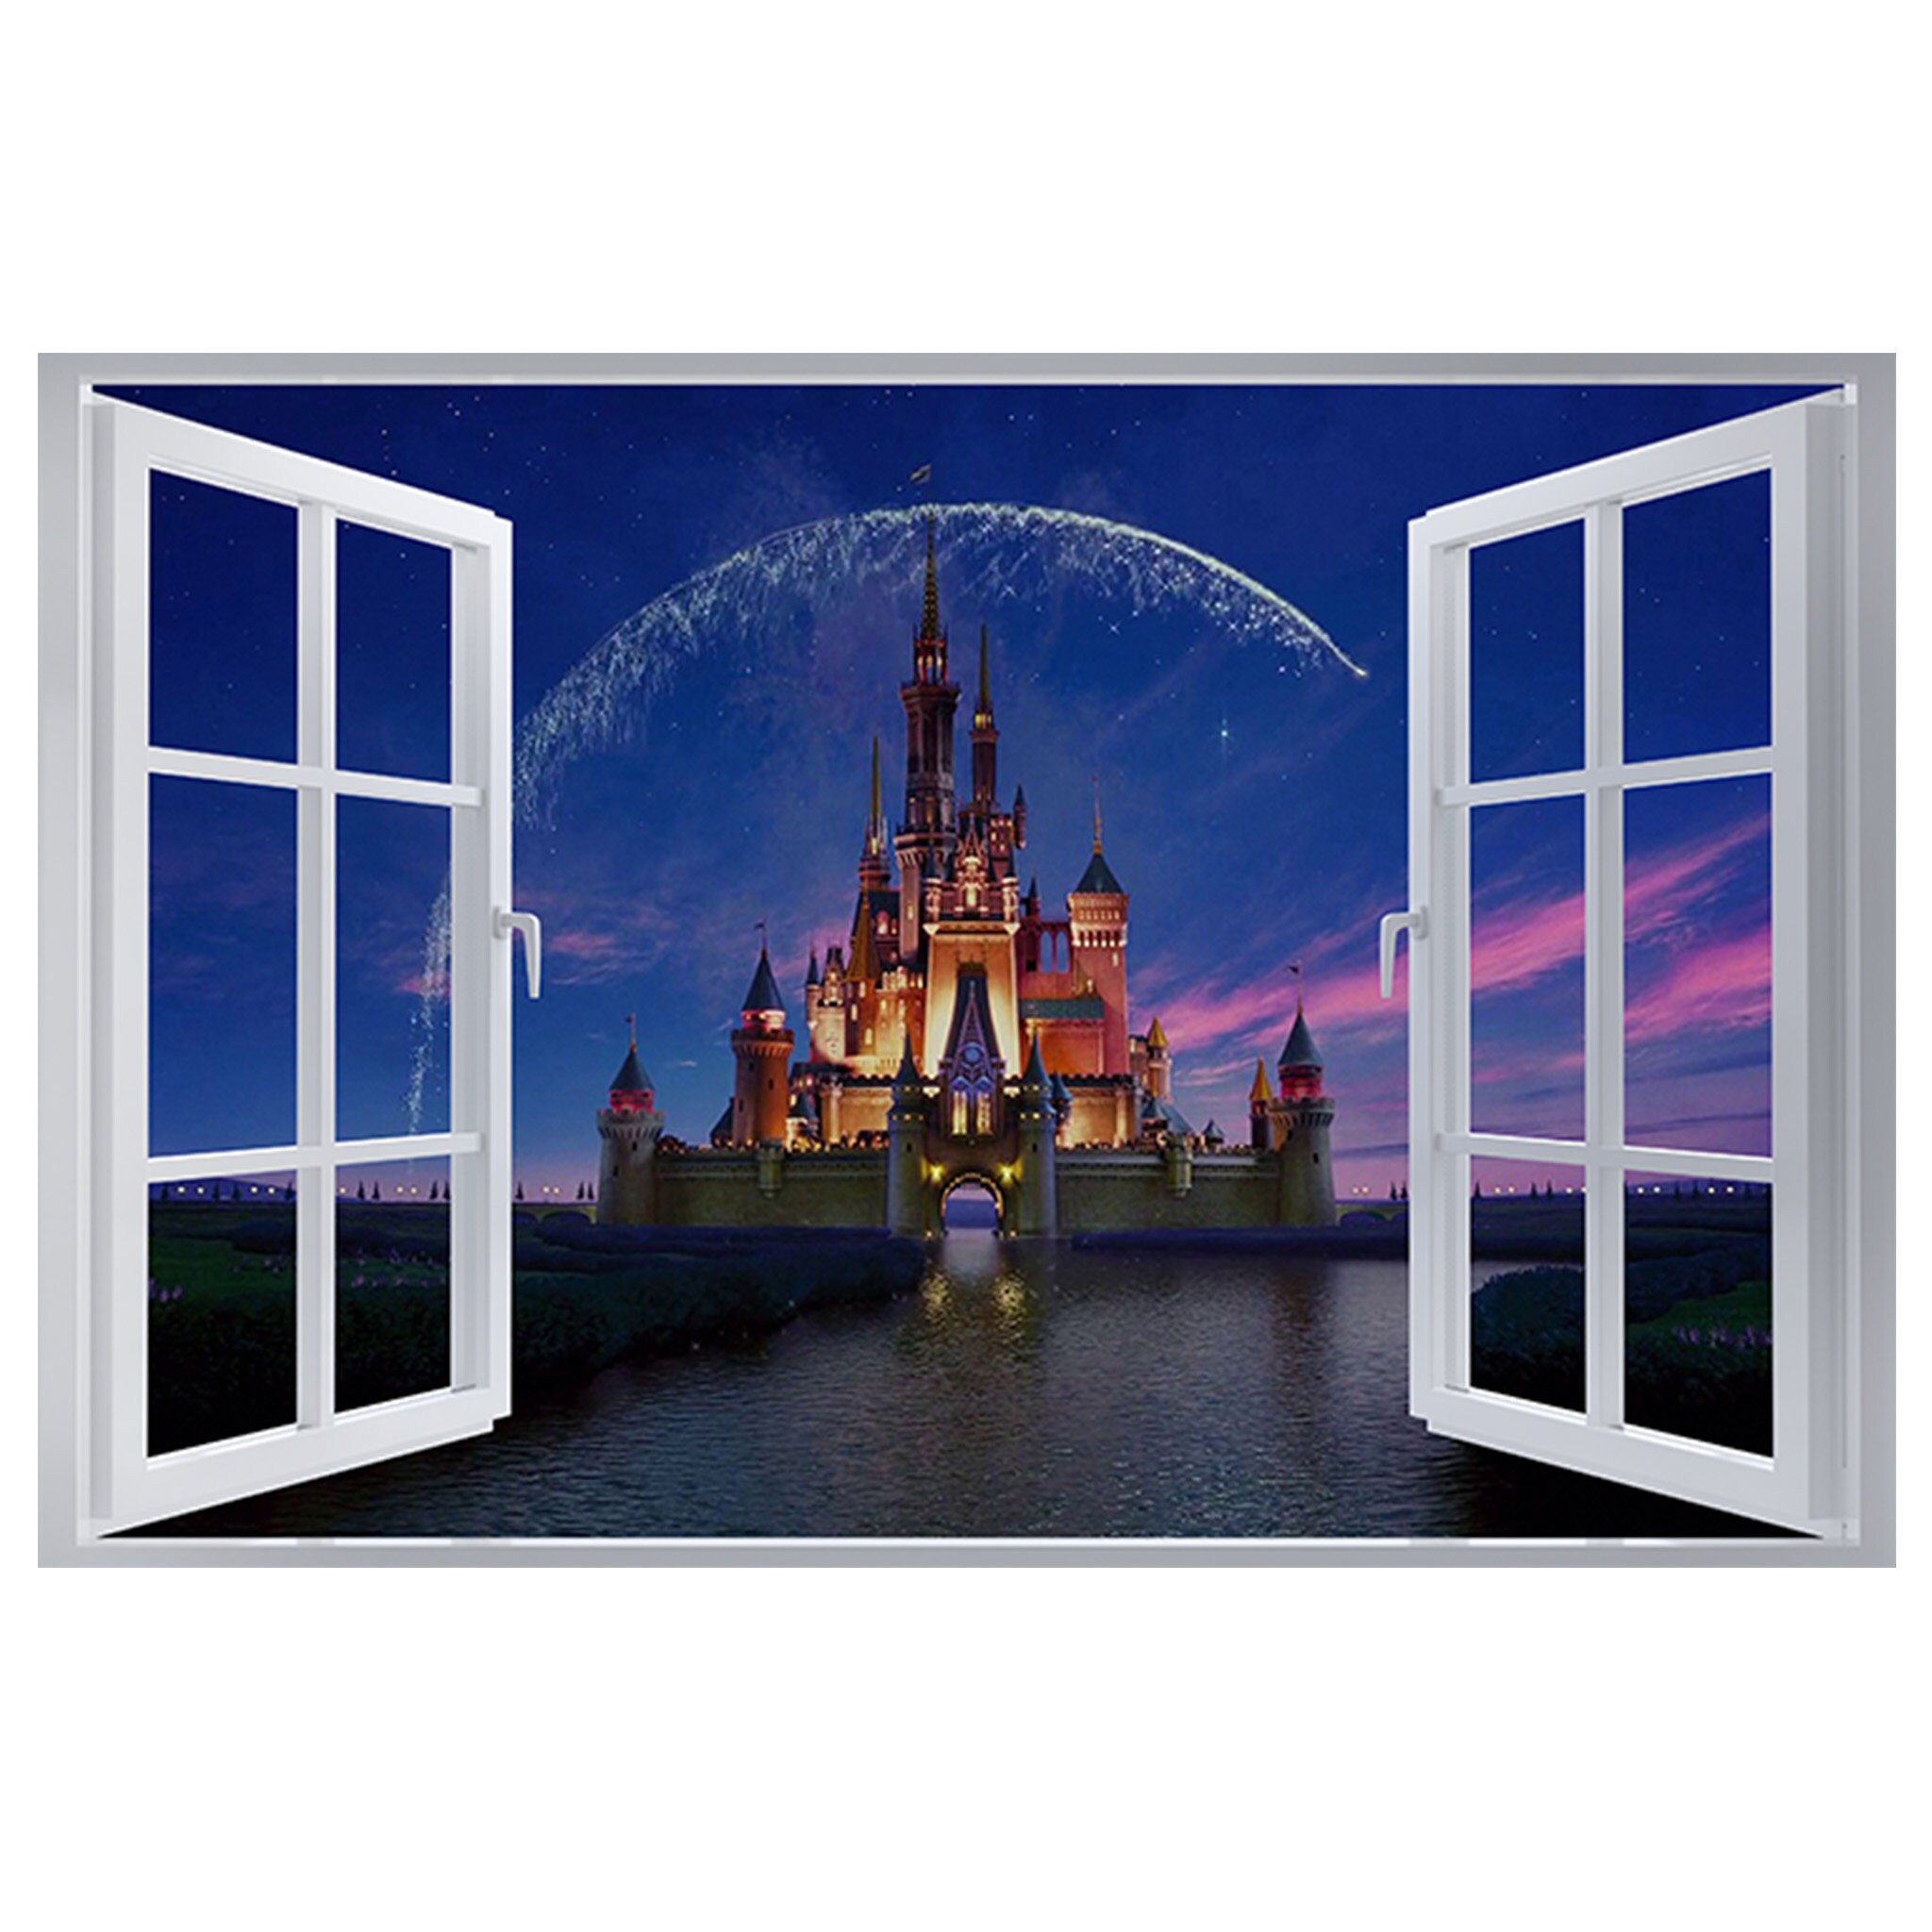 Disneyland Castle Paris 3D Window Wall Sticker Poster Vinyl Bedroom Decal F7